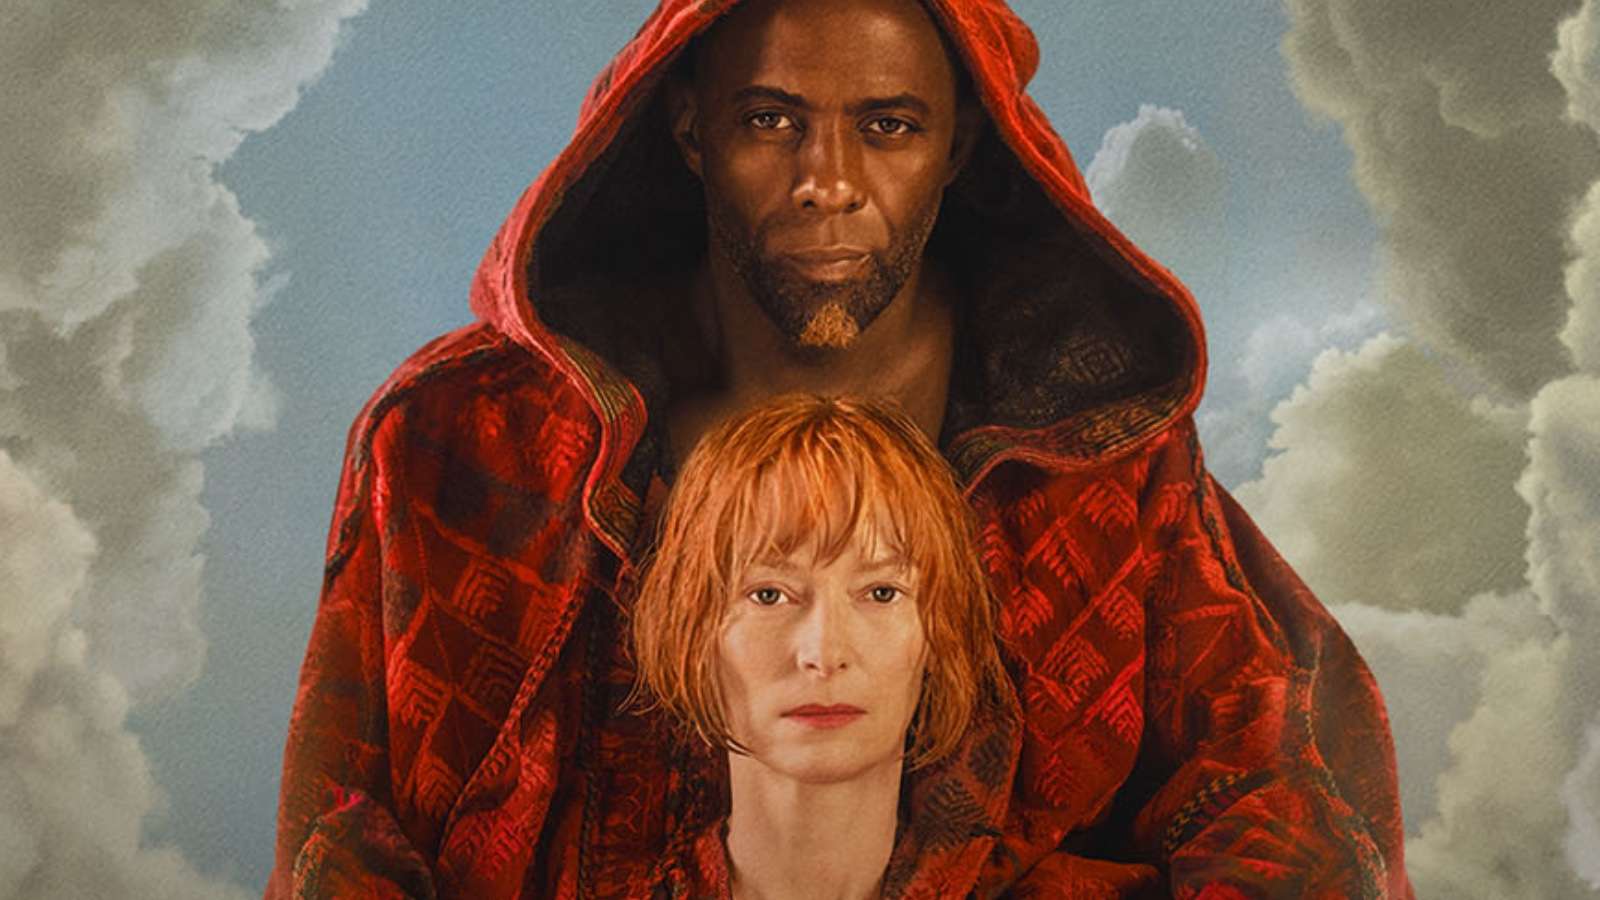 Idris Elba and Tilda Swinton in Three Thousands Years Longing as Djinn and Alithea.